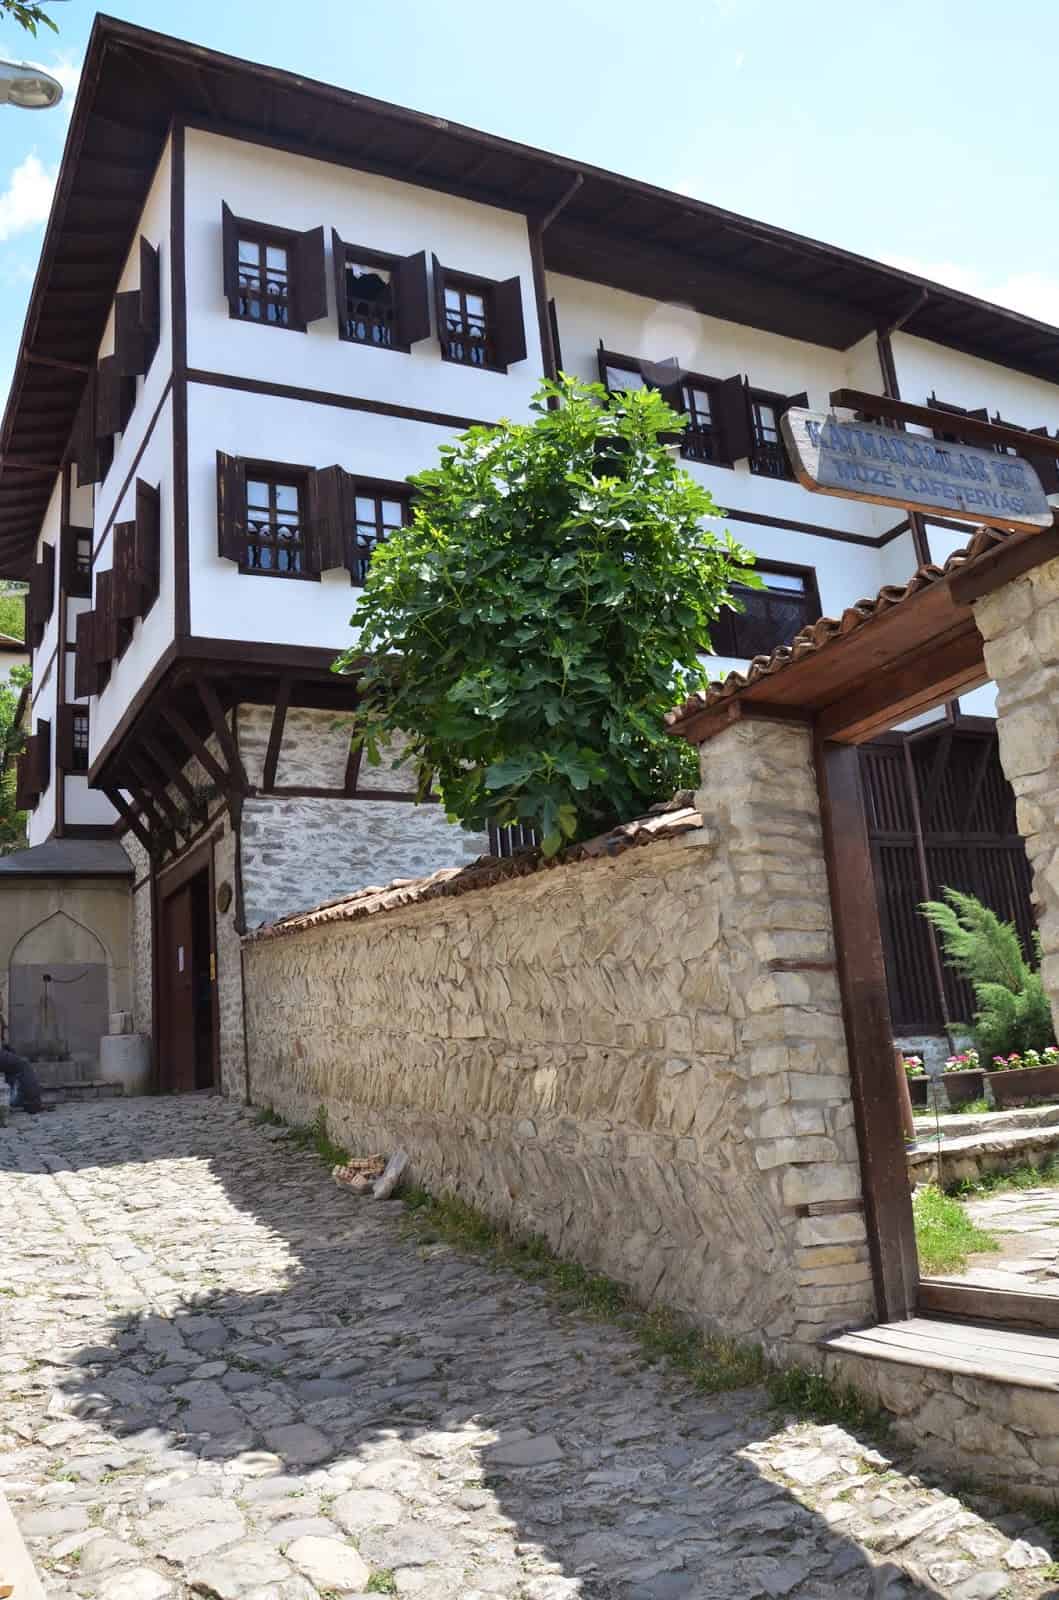 Kaymakamlar House in Safranbolu, Turkey